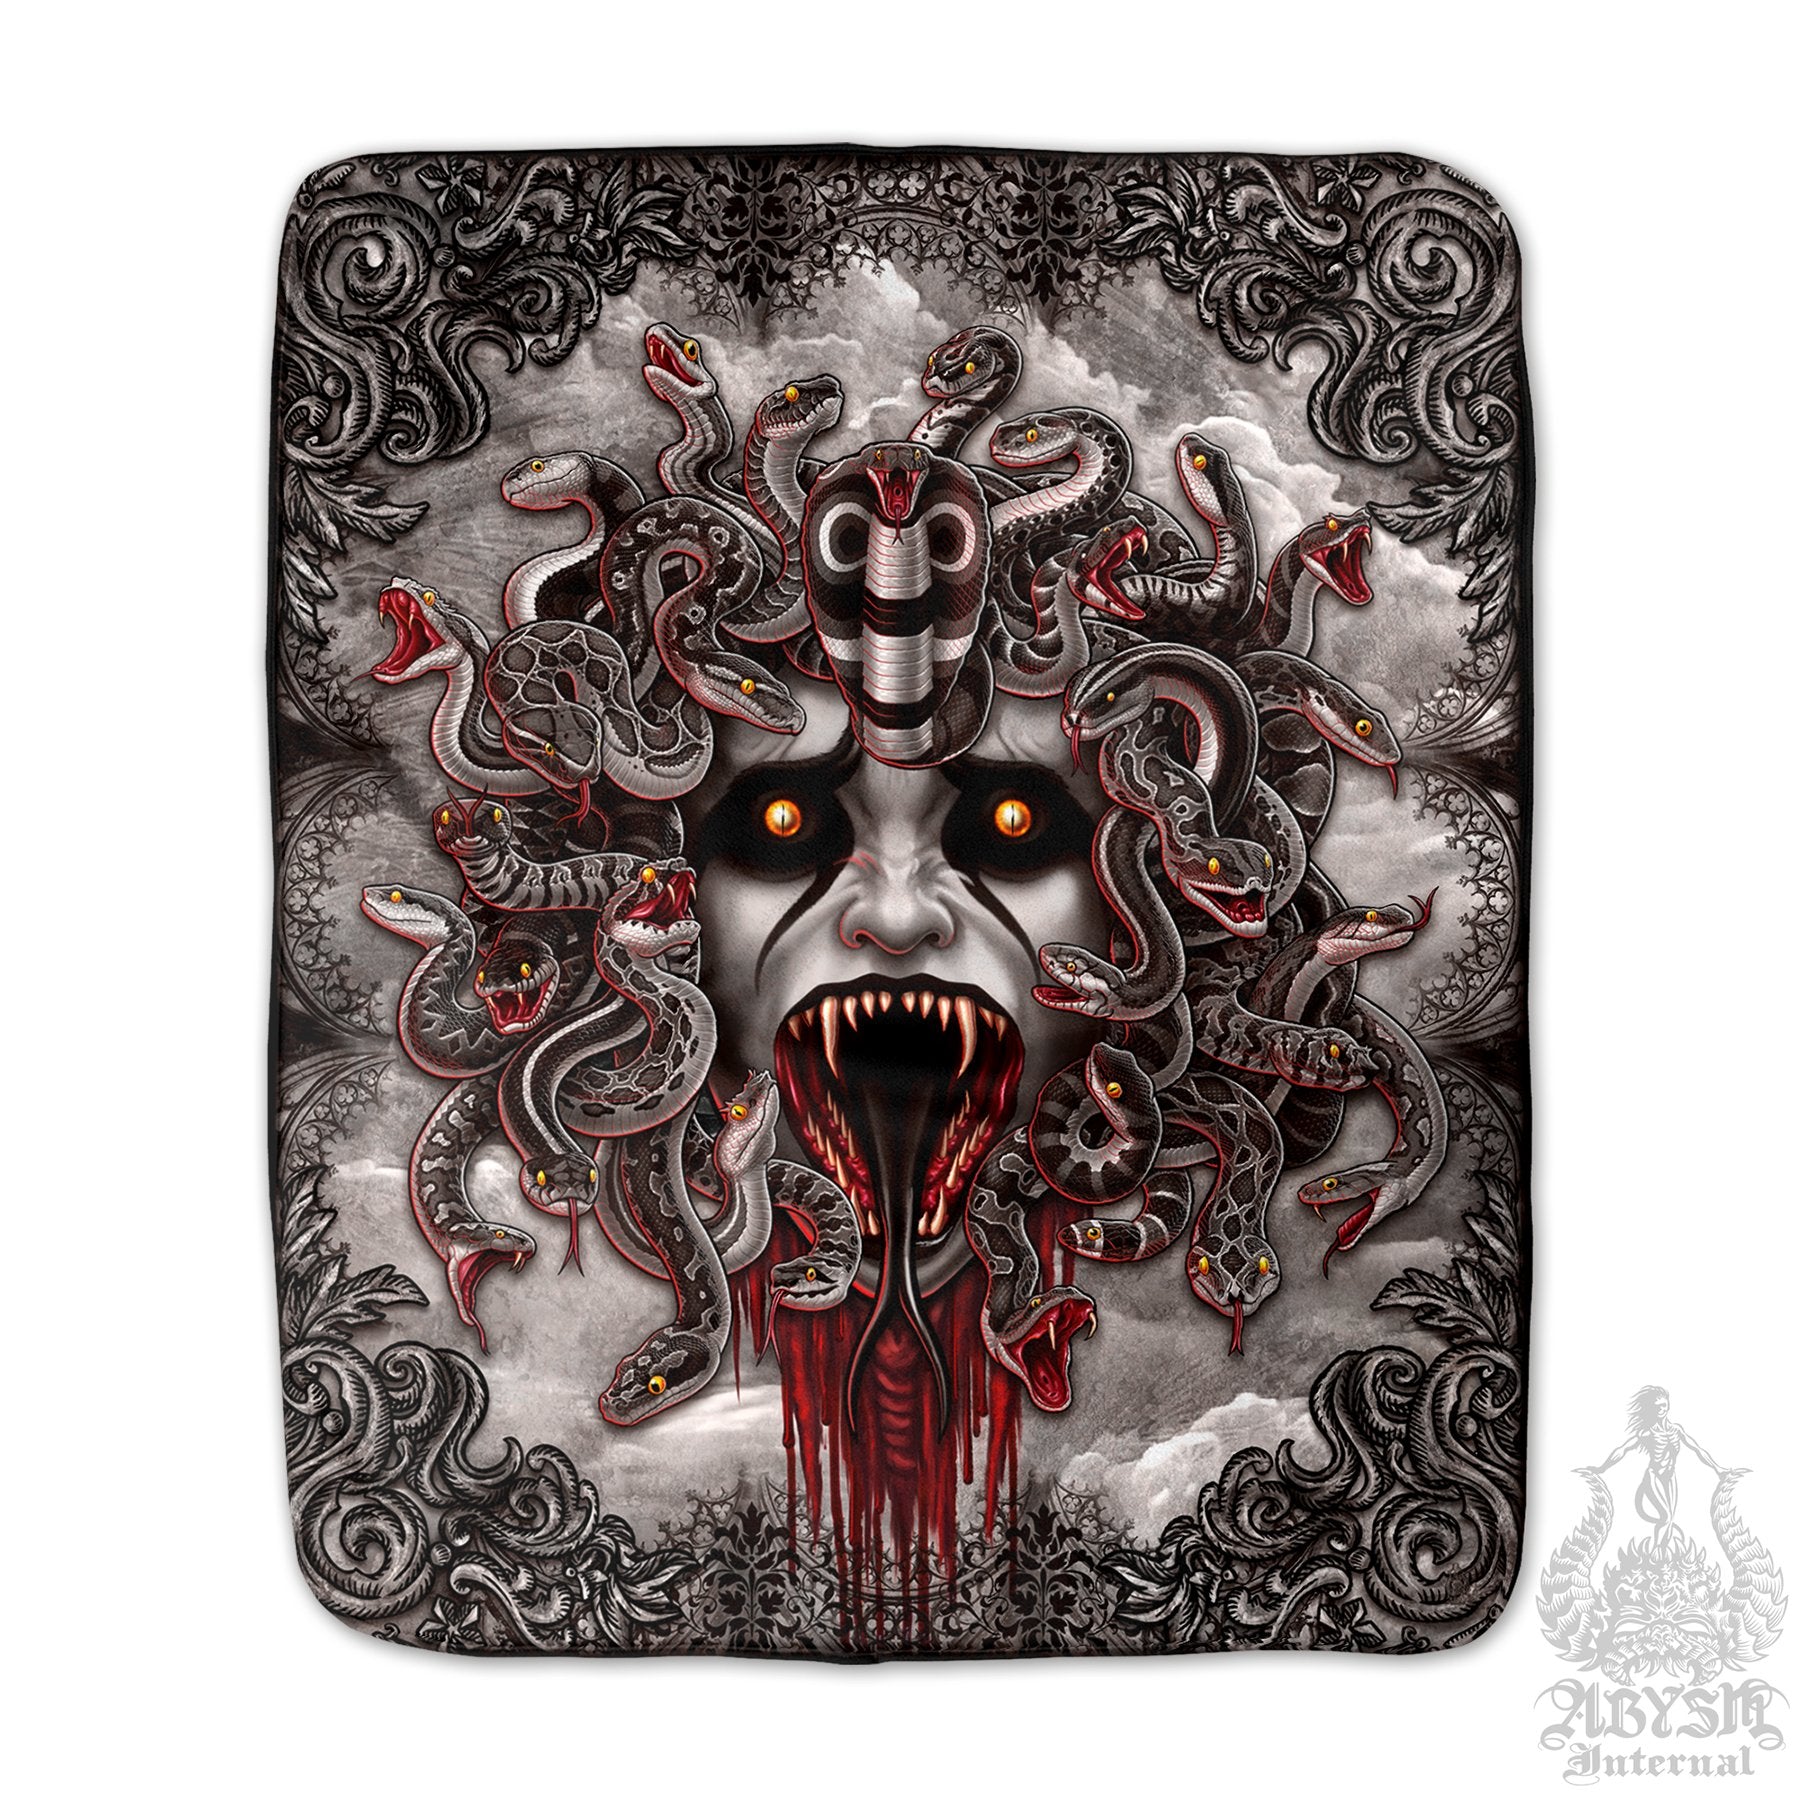 Medusa Sherpa Fleece Throw Blanket, Gothic Home Decor, Alternative Skull Art Gift - 4 Faces, Grey Snakes - Abysm Internal